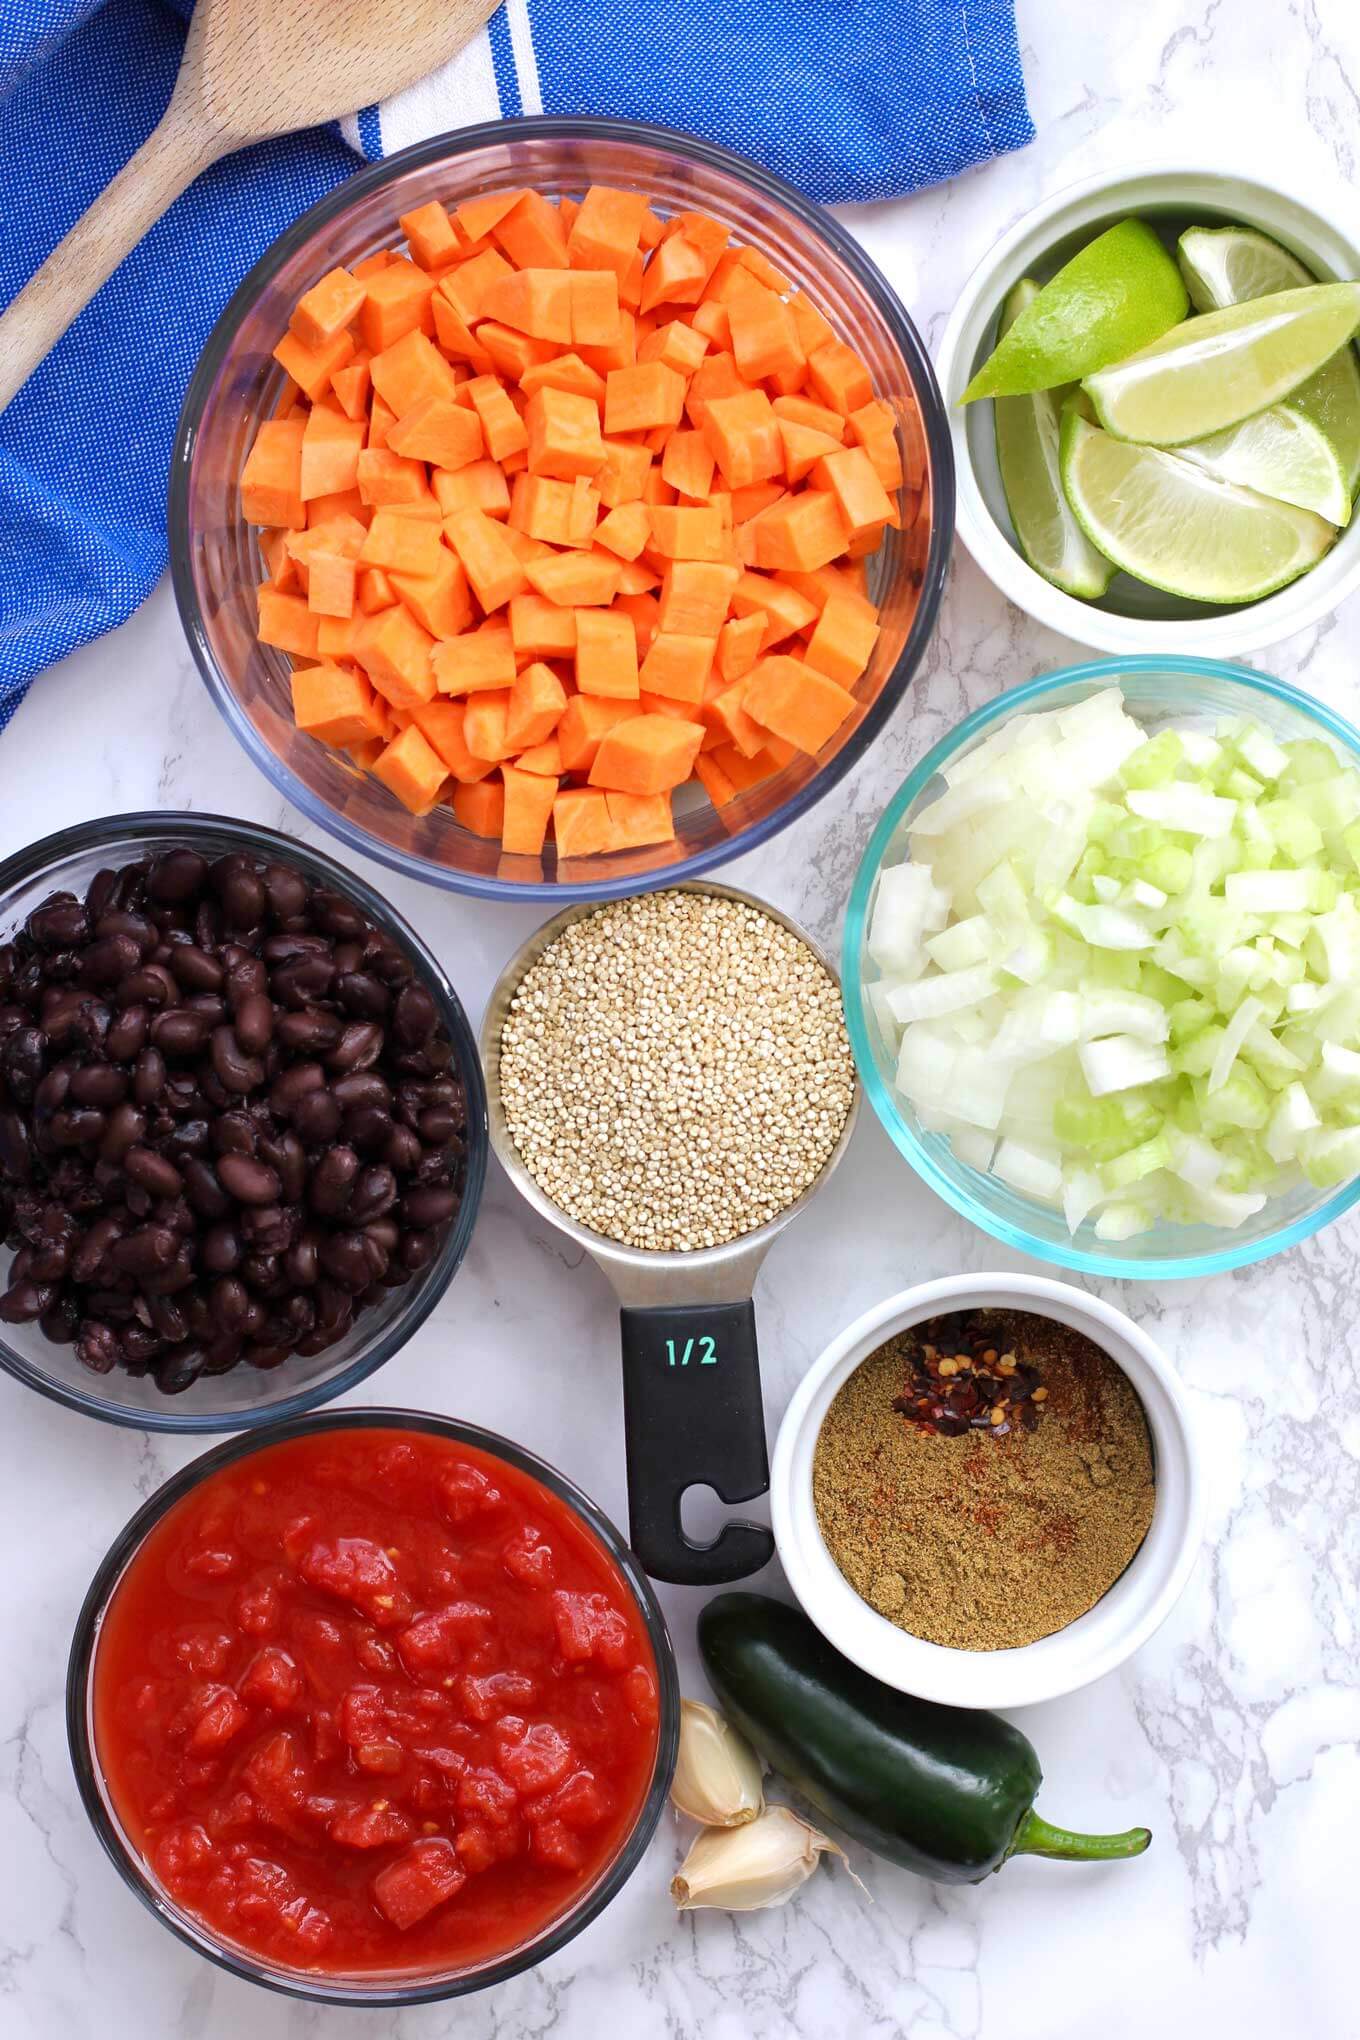 Ingredients to make vegetarian chili.